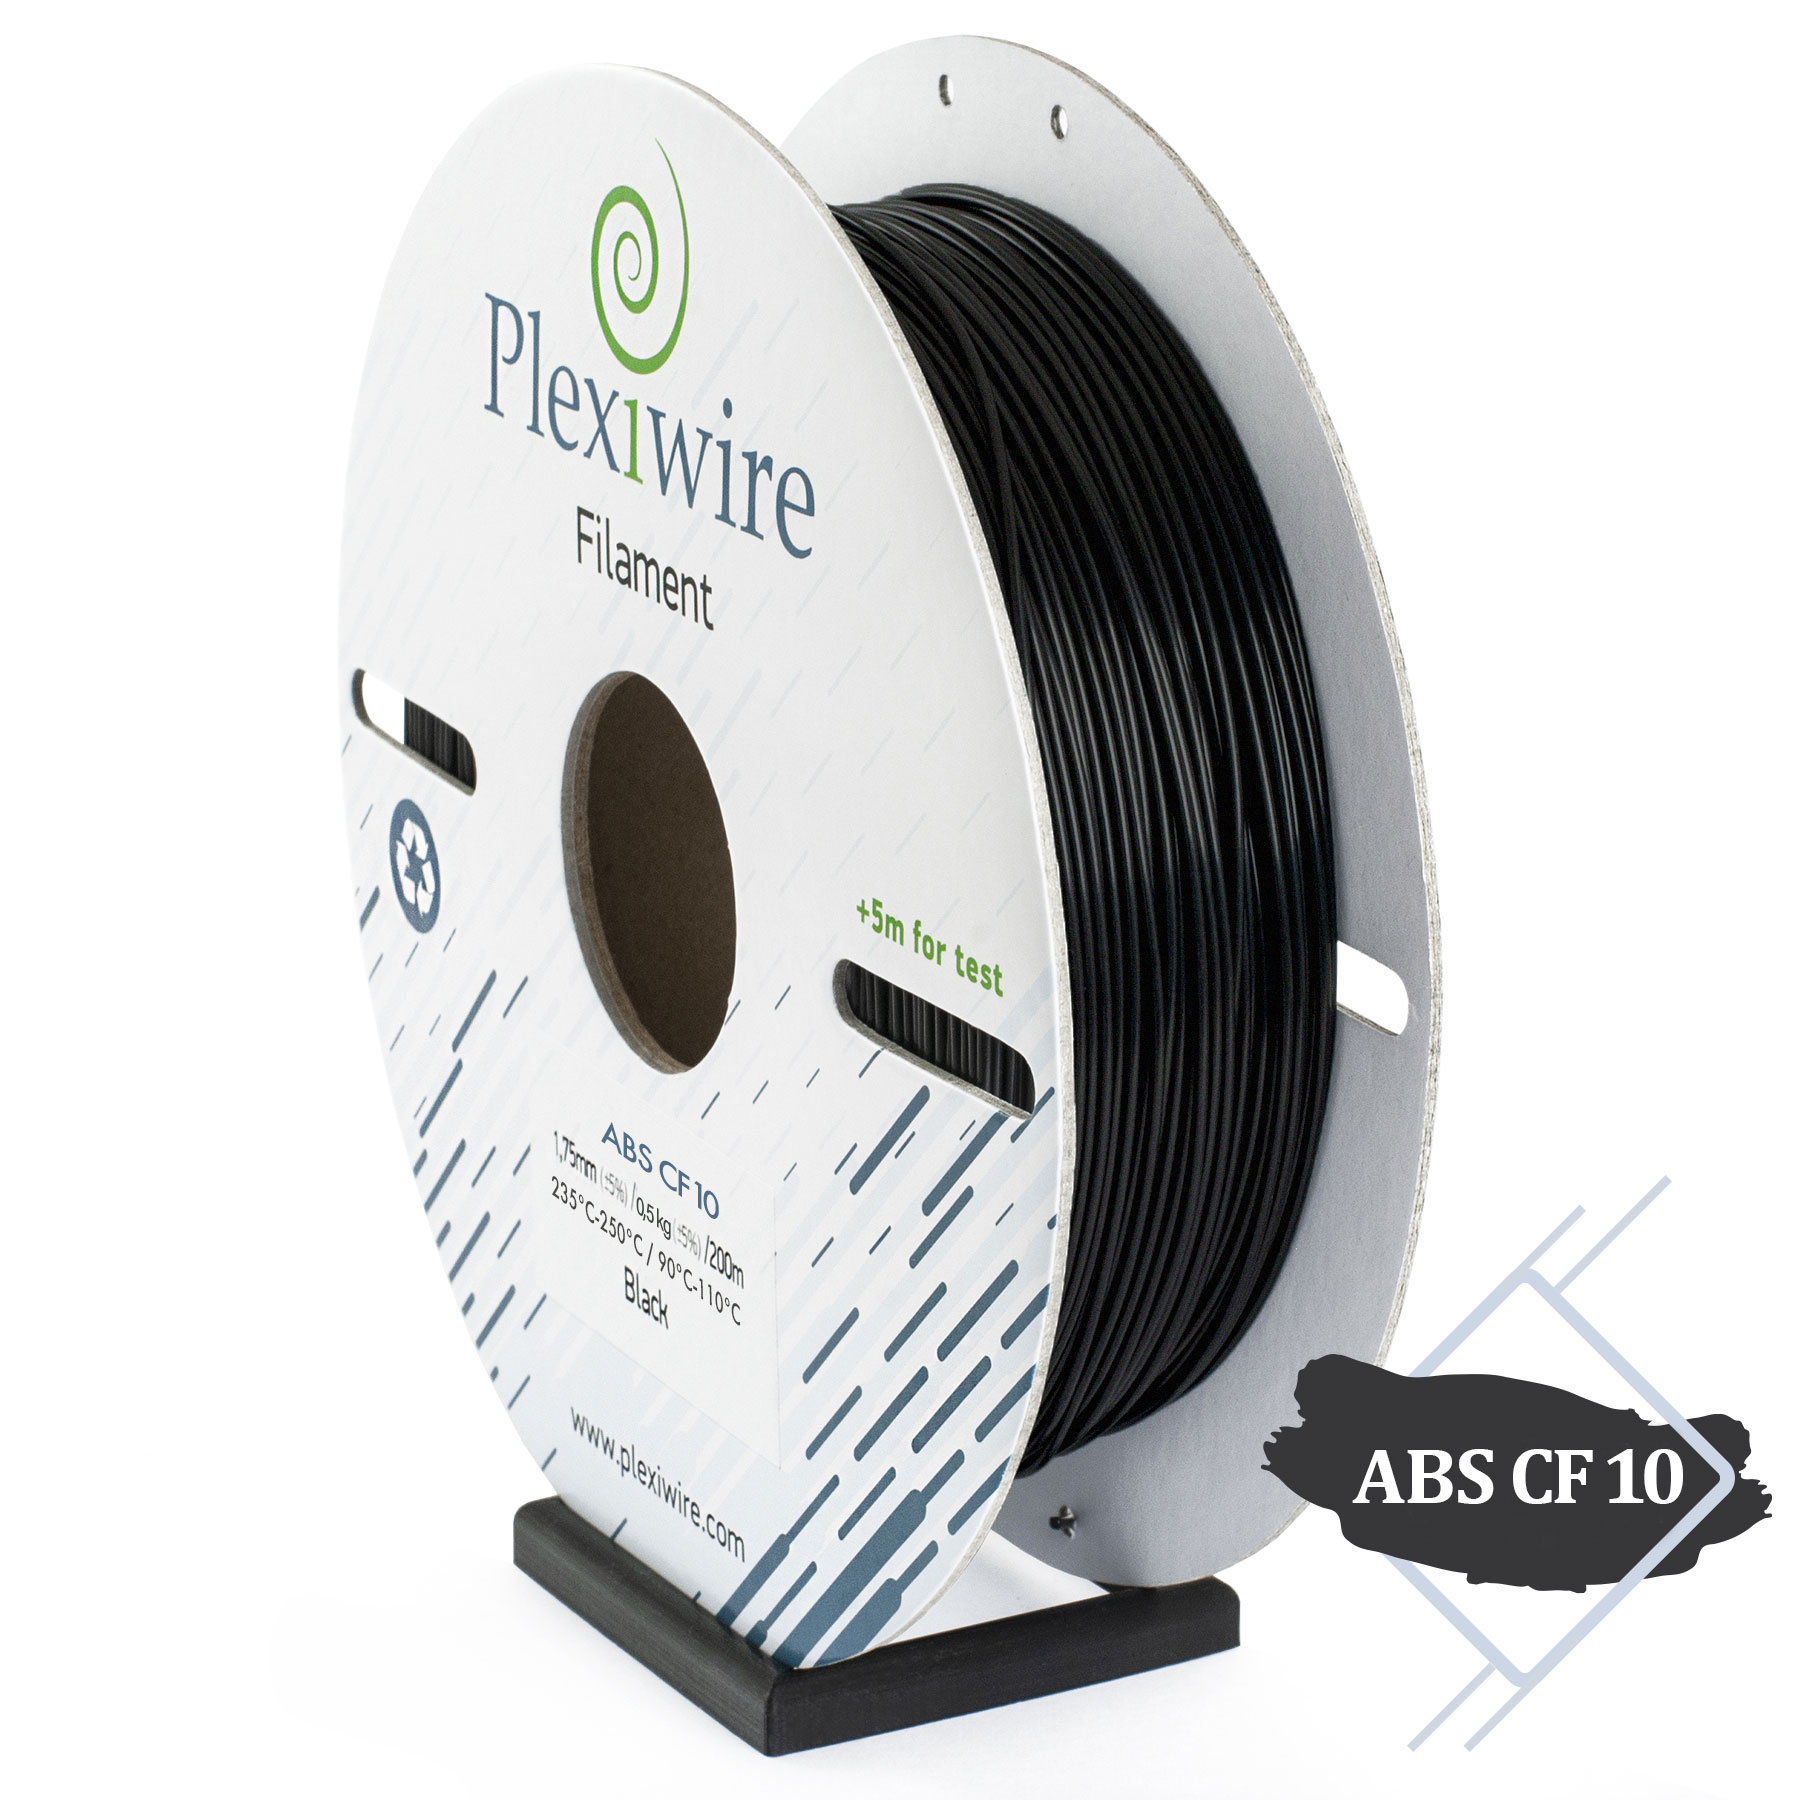 Plexiwire filament ABS CF10 - Es handelt sich um Standard-Abs mit 10% Karbonfaserzusatz